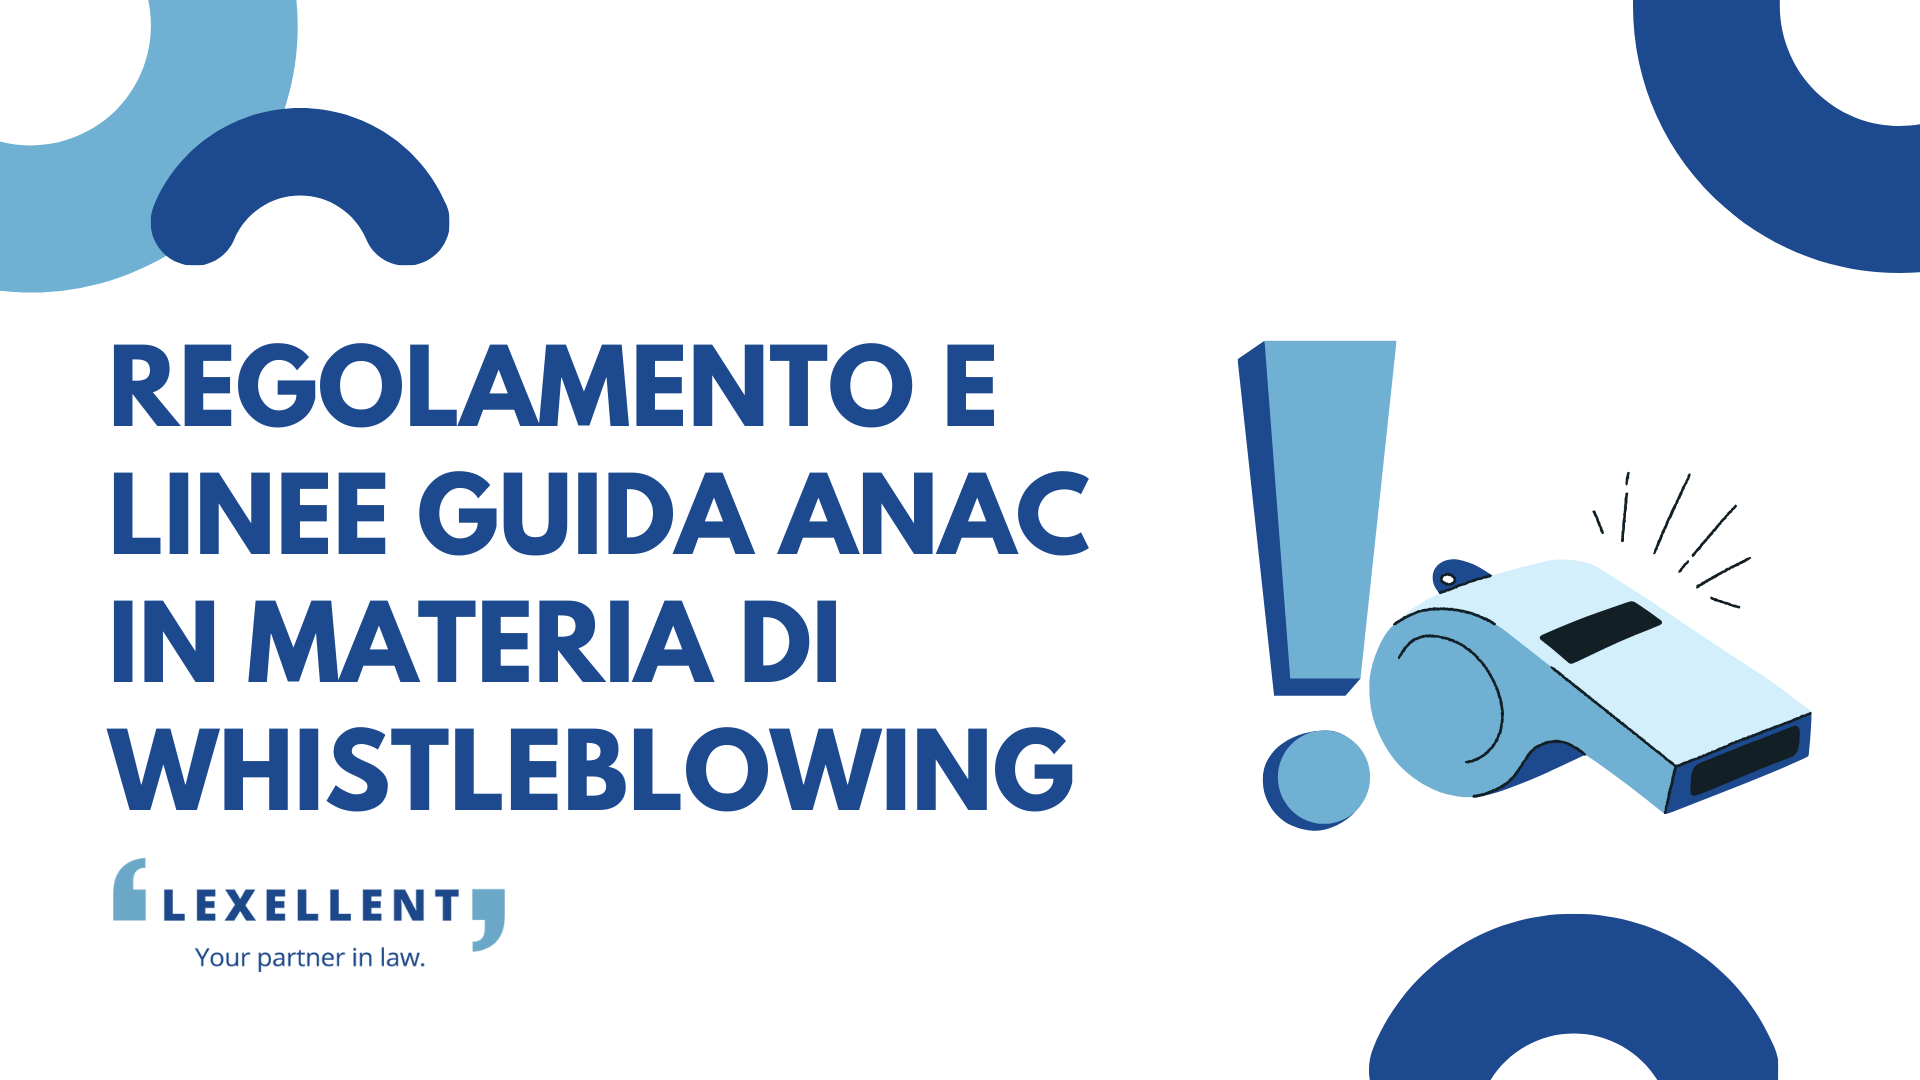 Regolamento e linee guida ANAC in materia di whistleblowing